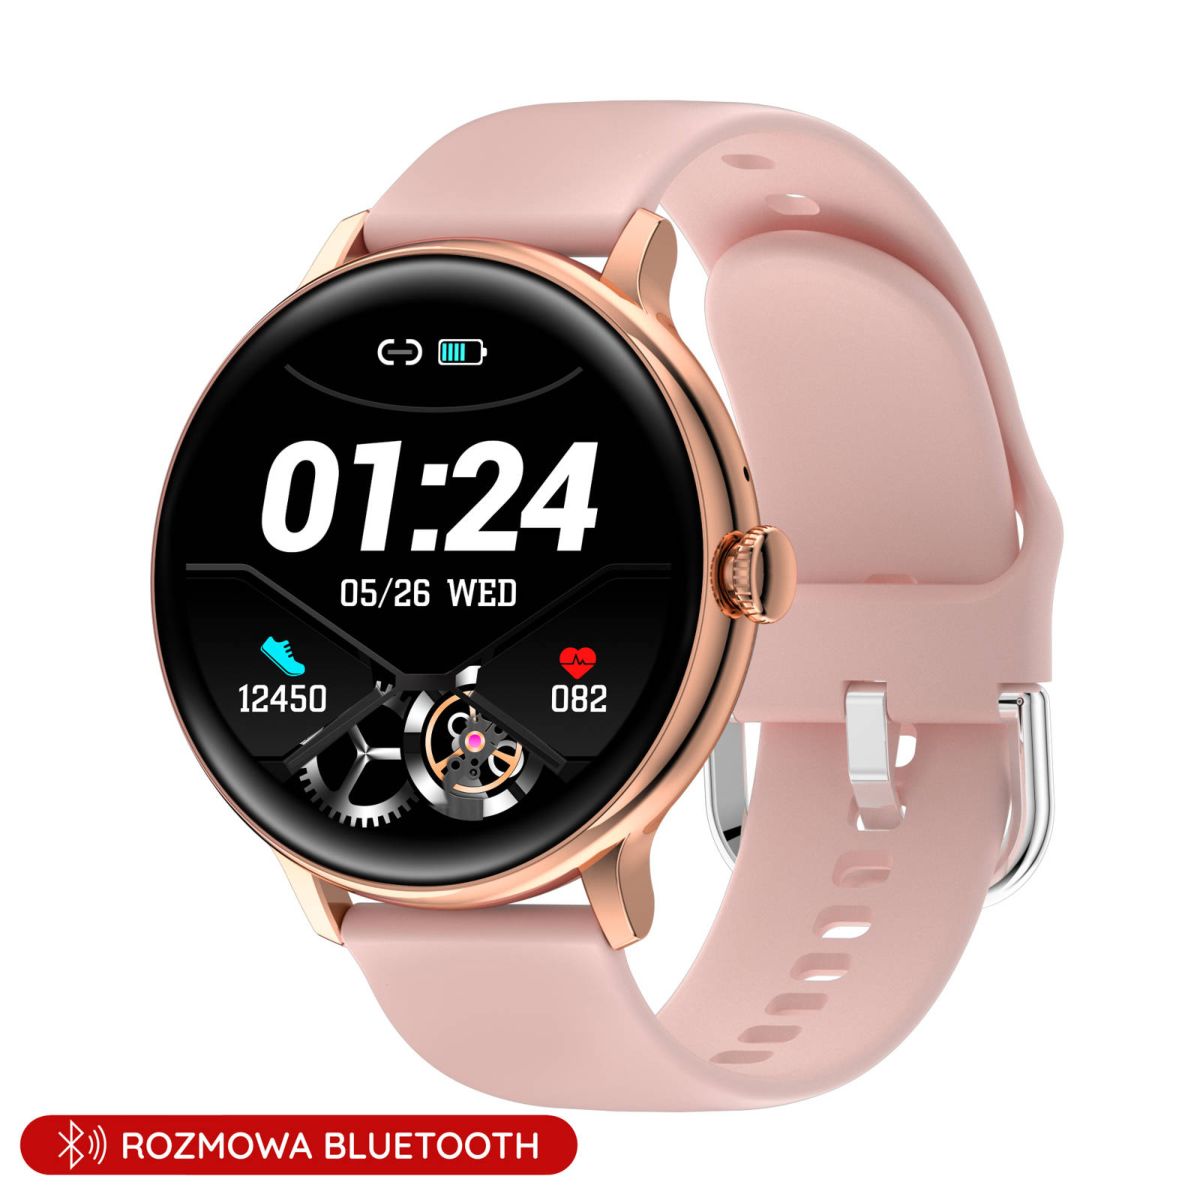 Damski smartwatch z funkcją rozmowy różowy Pacific 37-01 Sport Kalorie Puls  Termometr - 229,00 zł - Otozegarki.pl